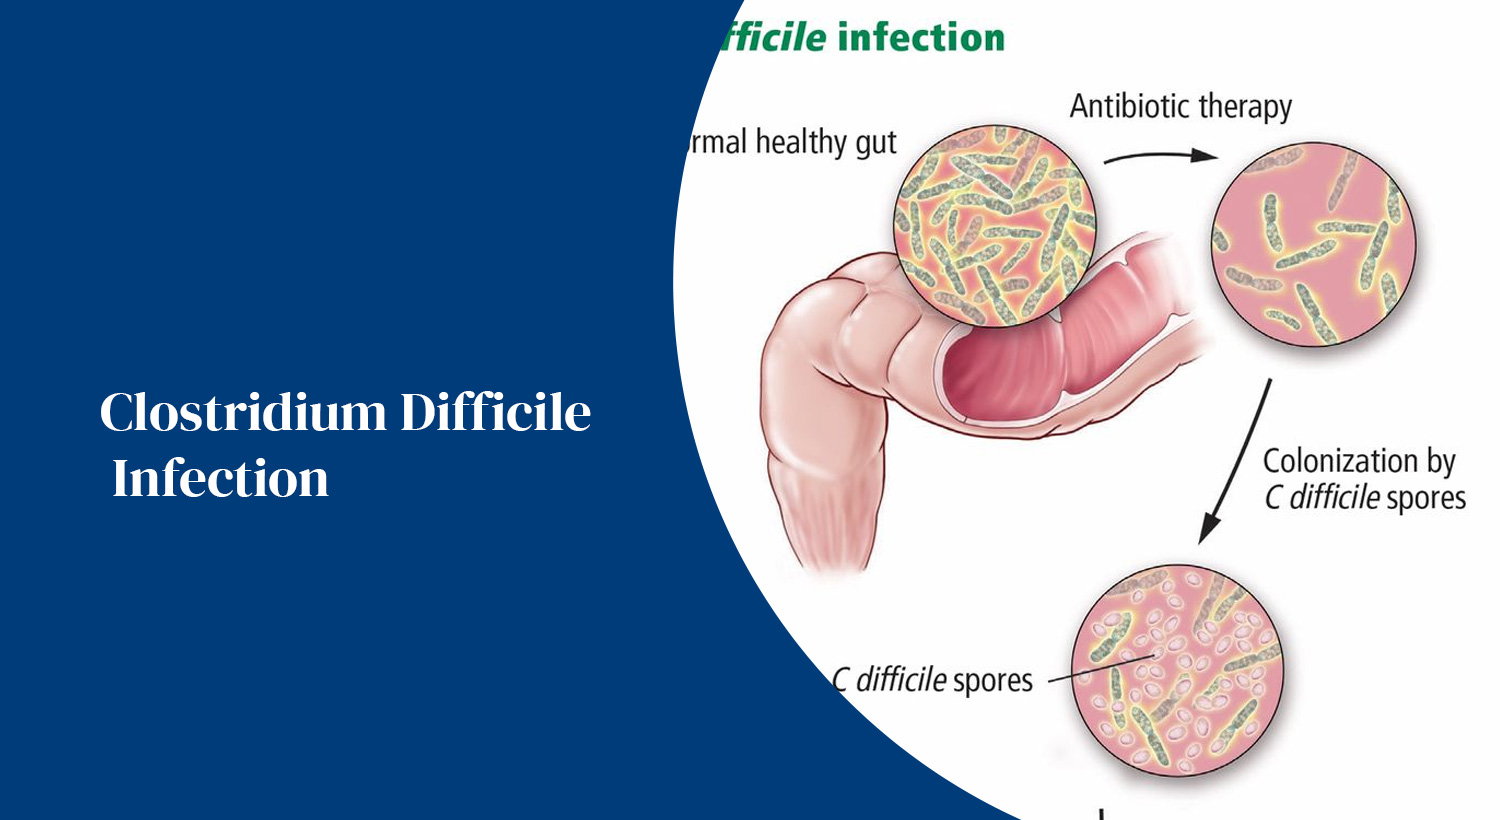 Clostridium Difficile Infection